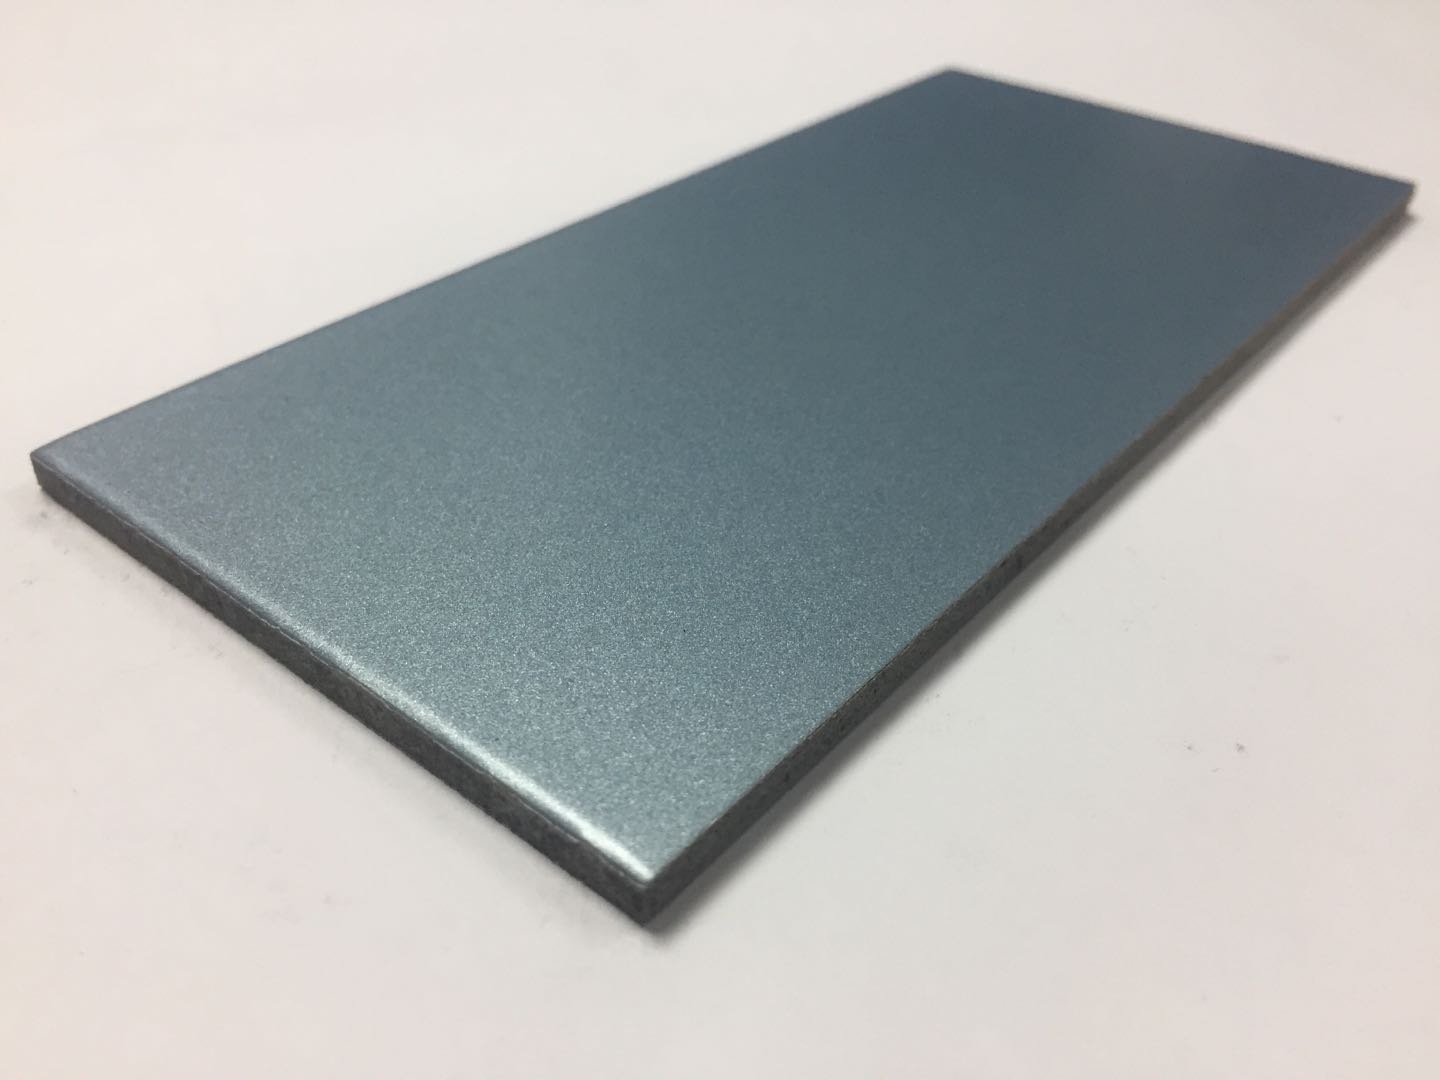 中国生产用于外墙立面装饰的铝塑复合板